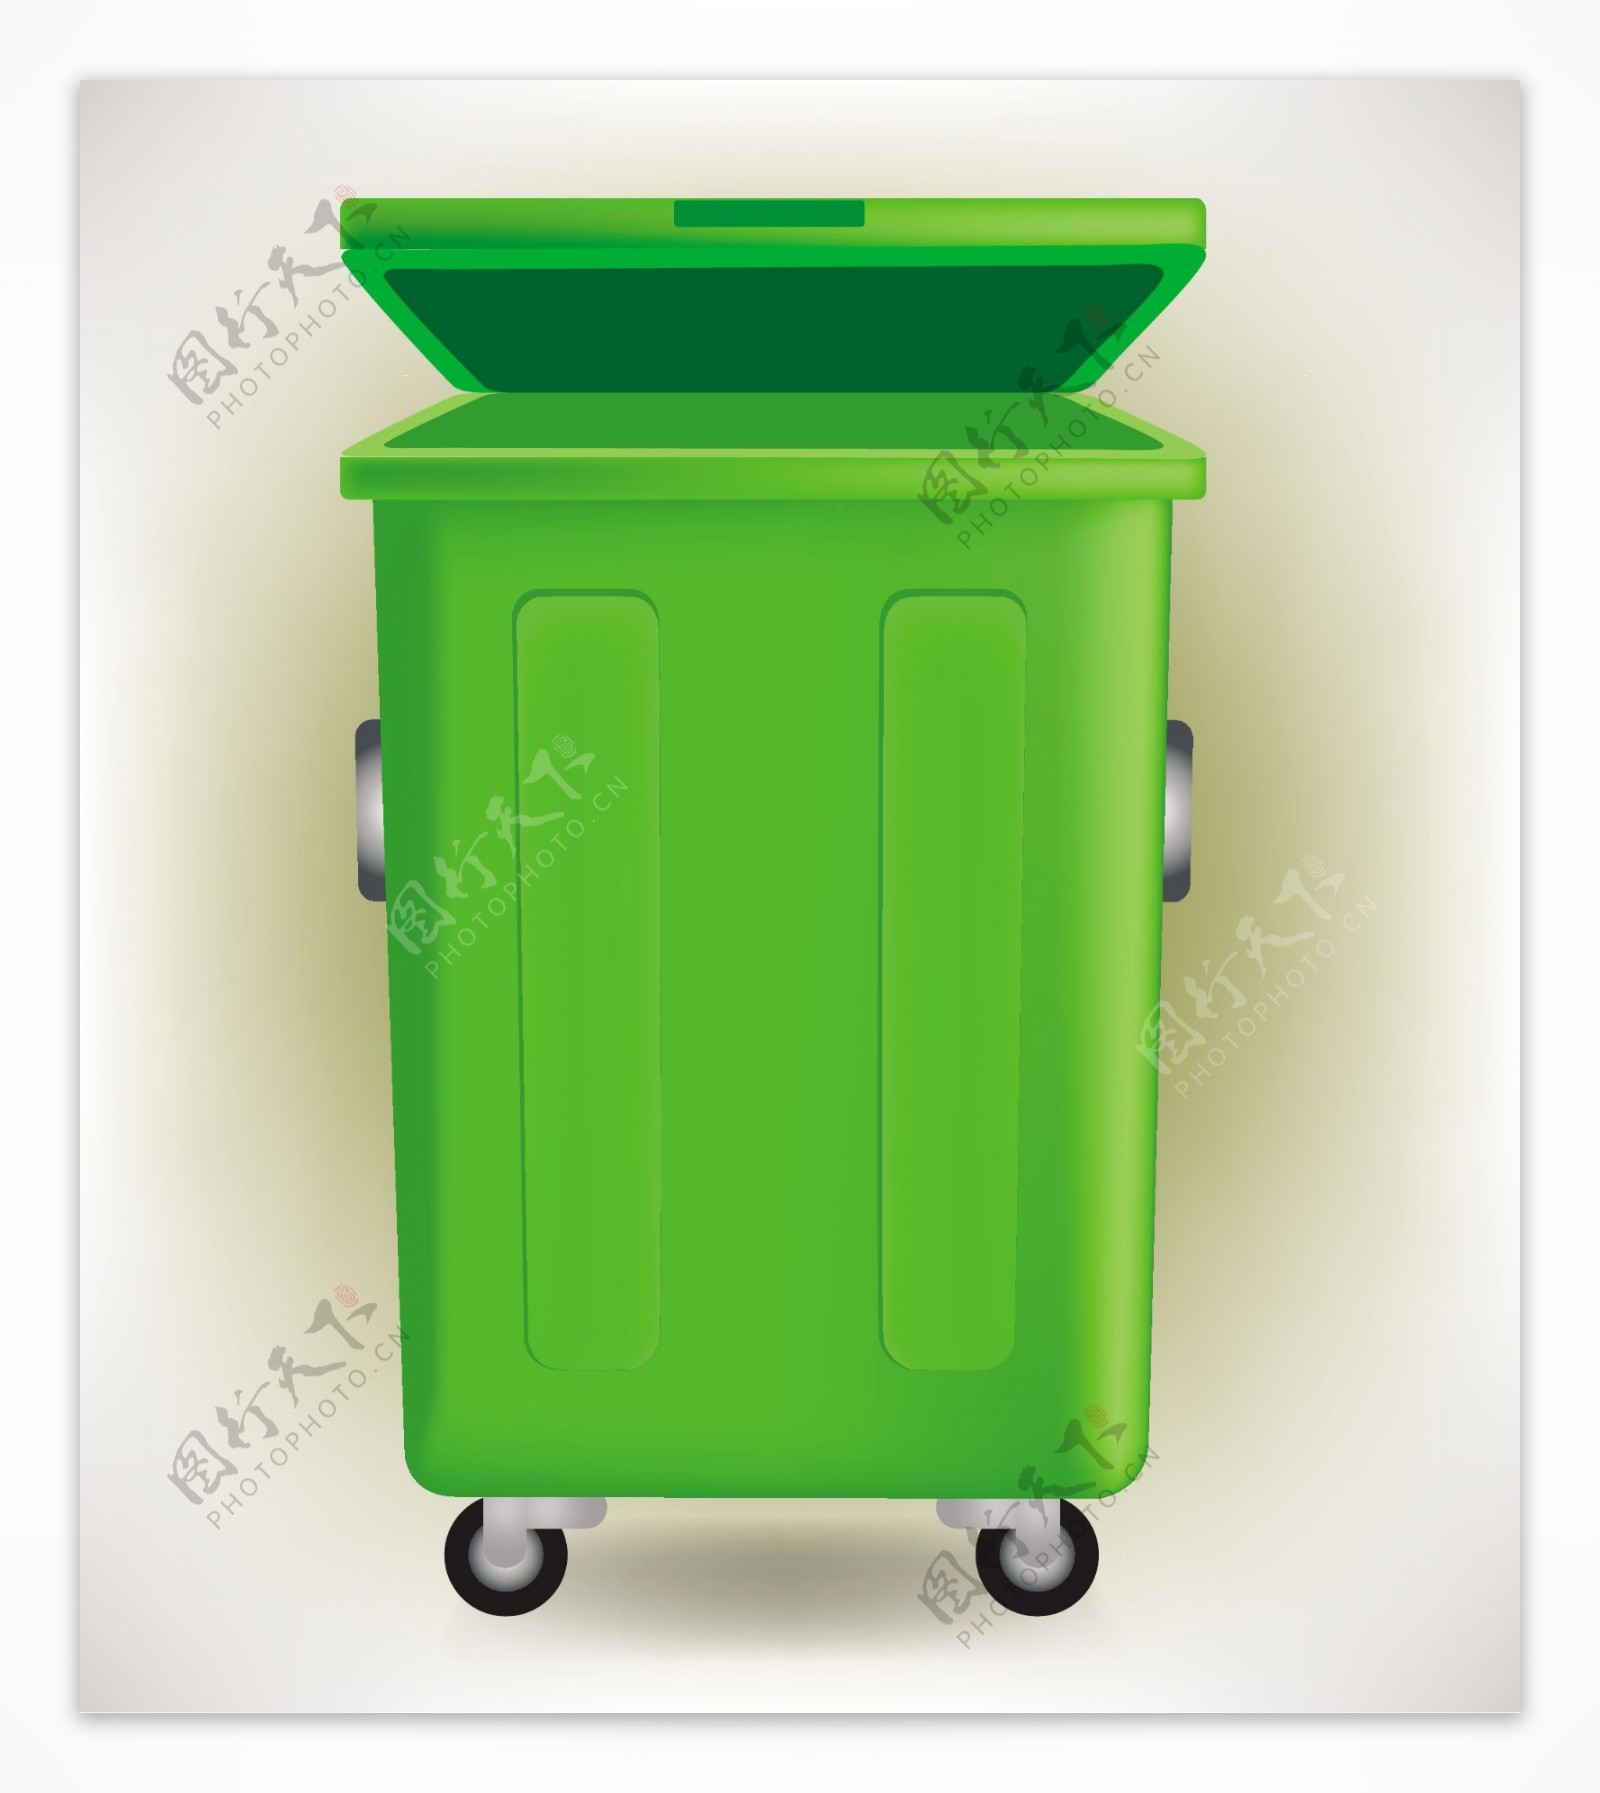 绿色垃圾桶矢量素材